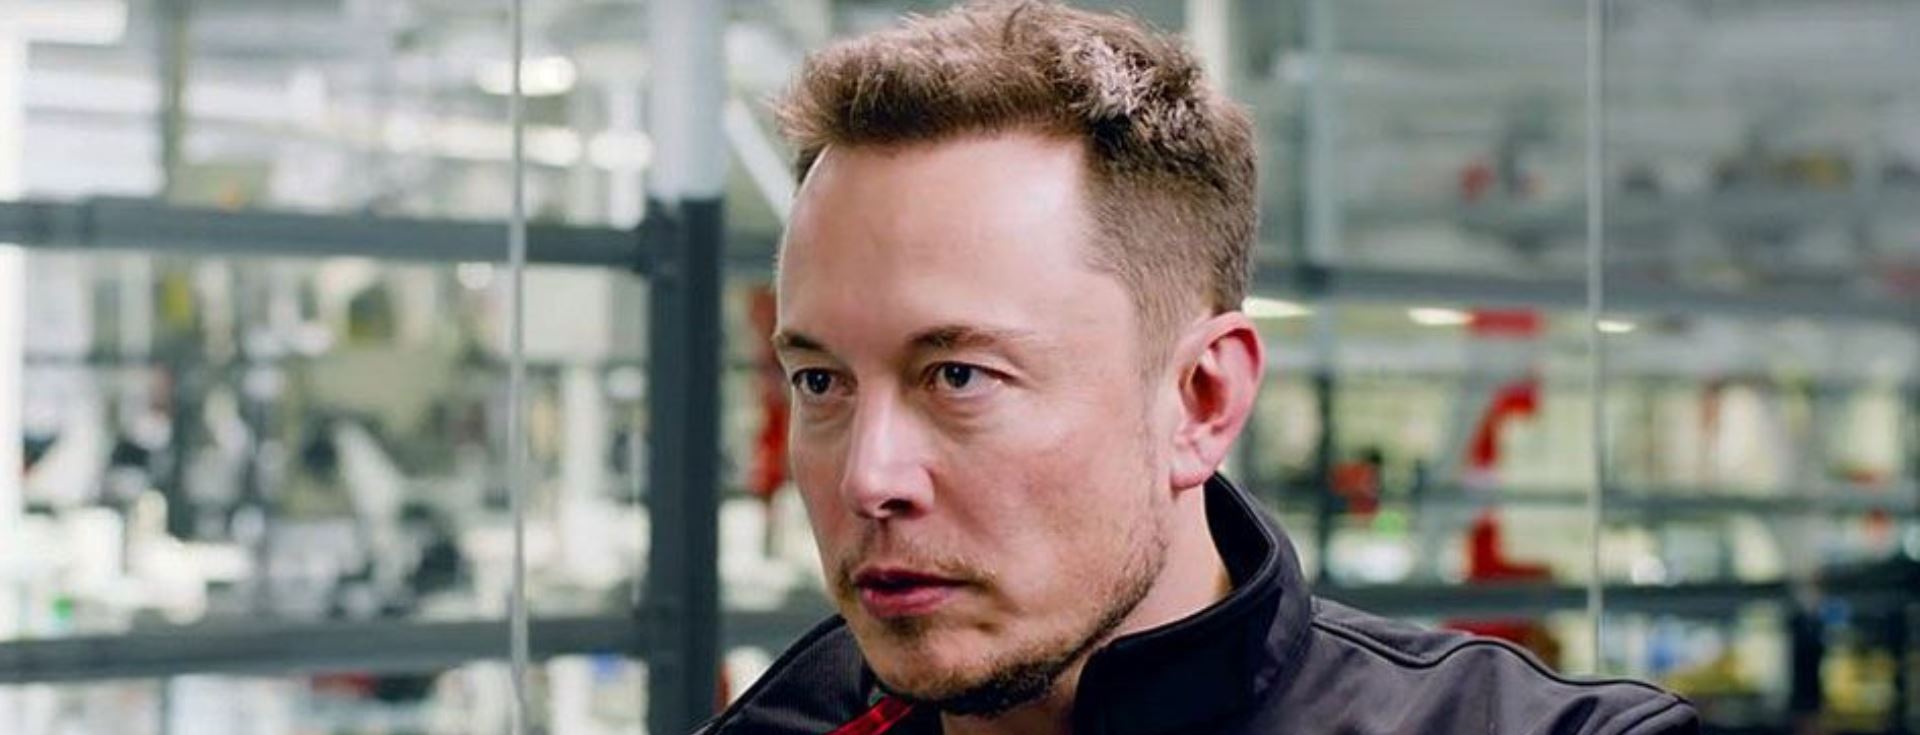 Elon Musk’ı Güçlü Bir Lider Yapan 4 Özellik